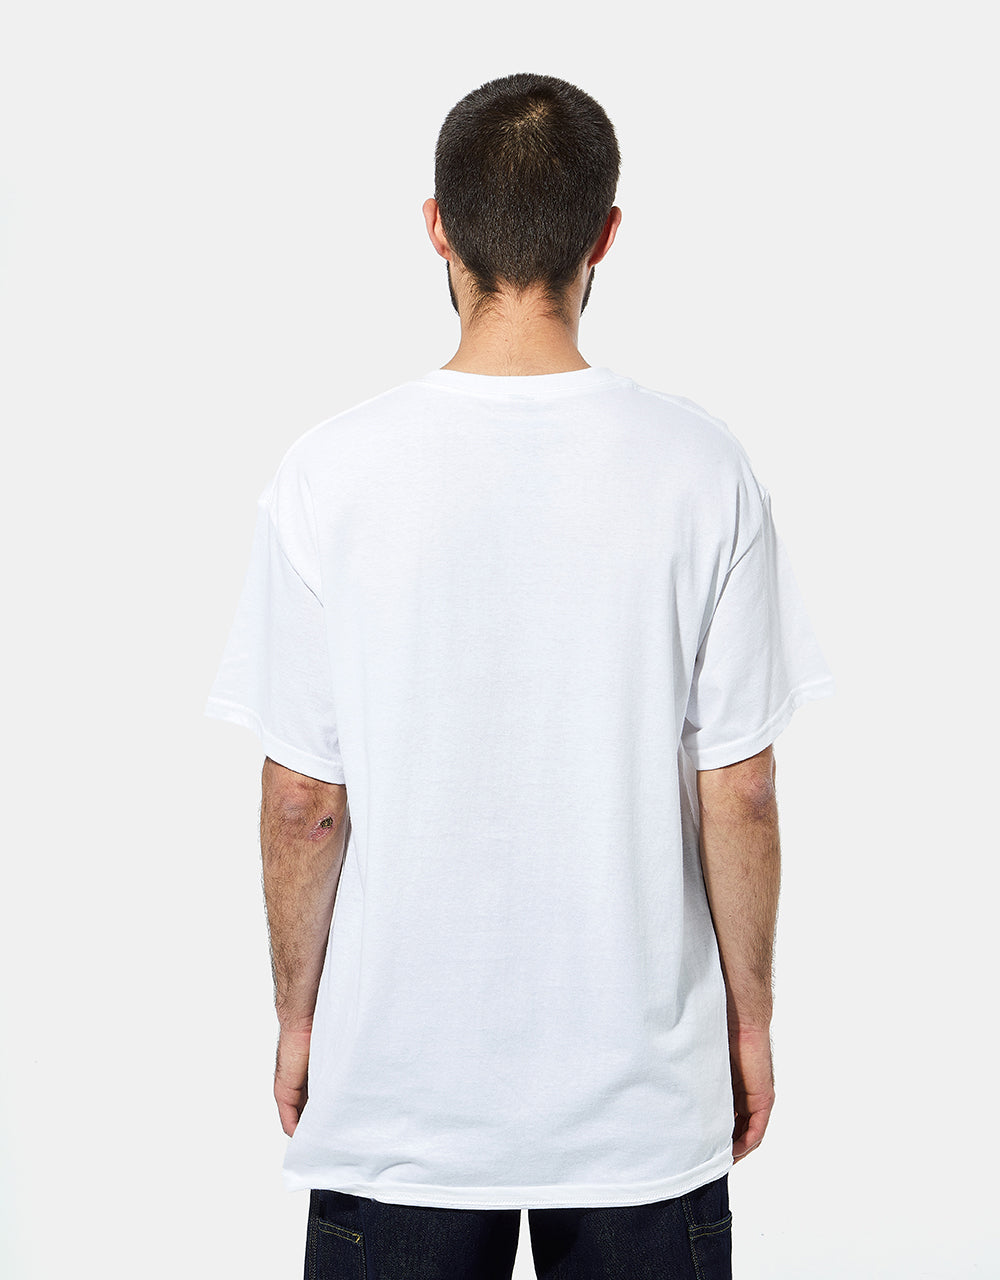 Krooked Moonsmile T-Shirt - White/Multi